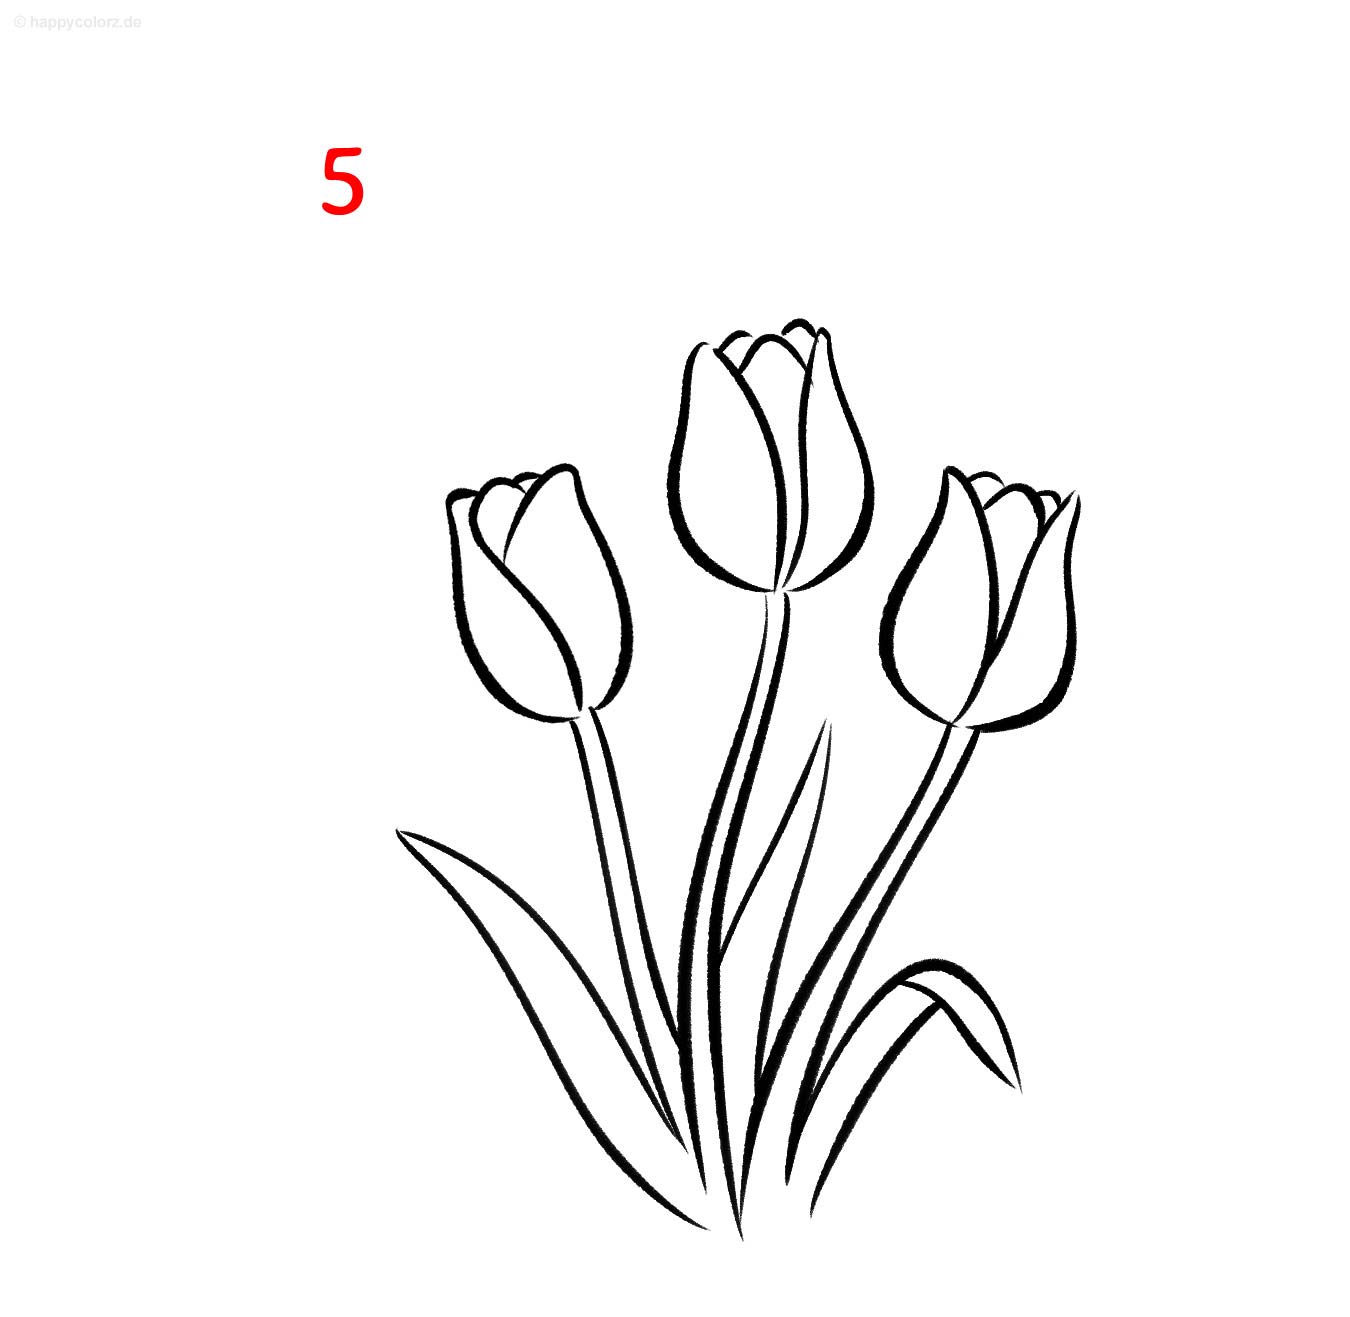 Anleitung: Tulpe zeichnen